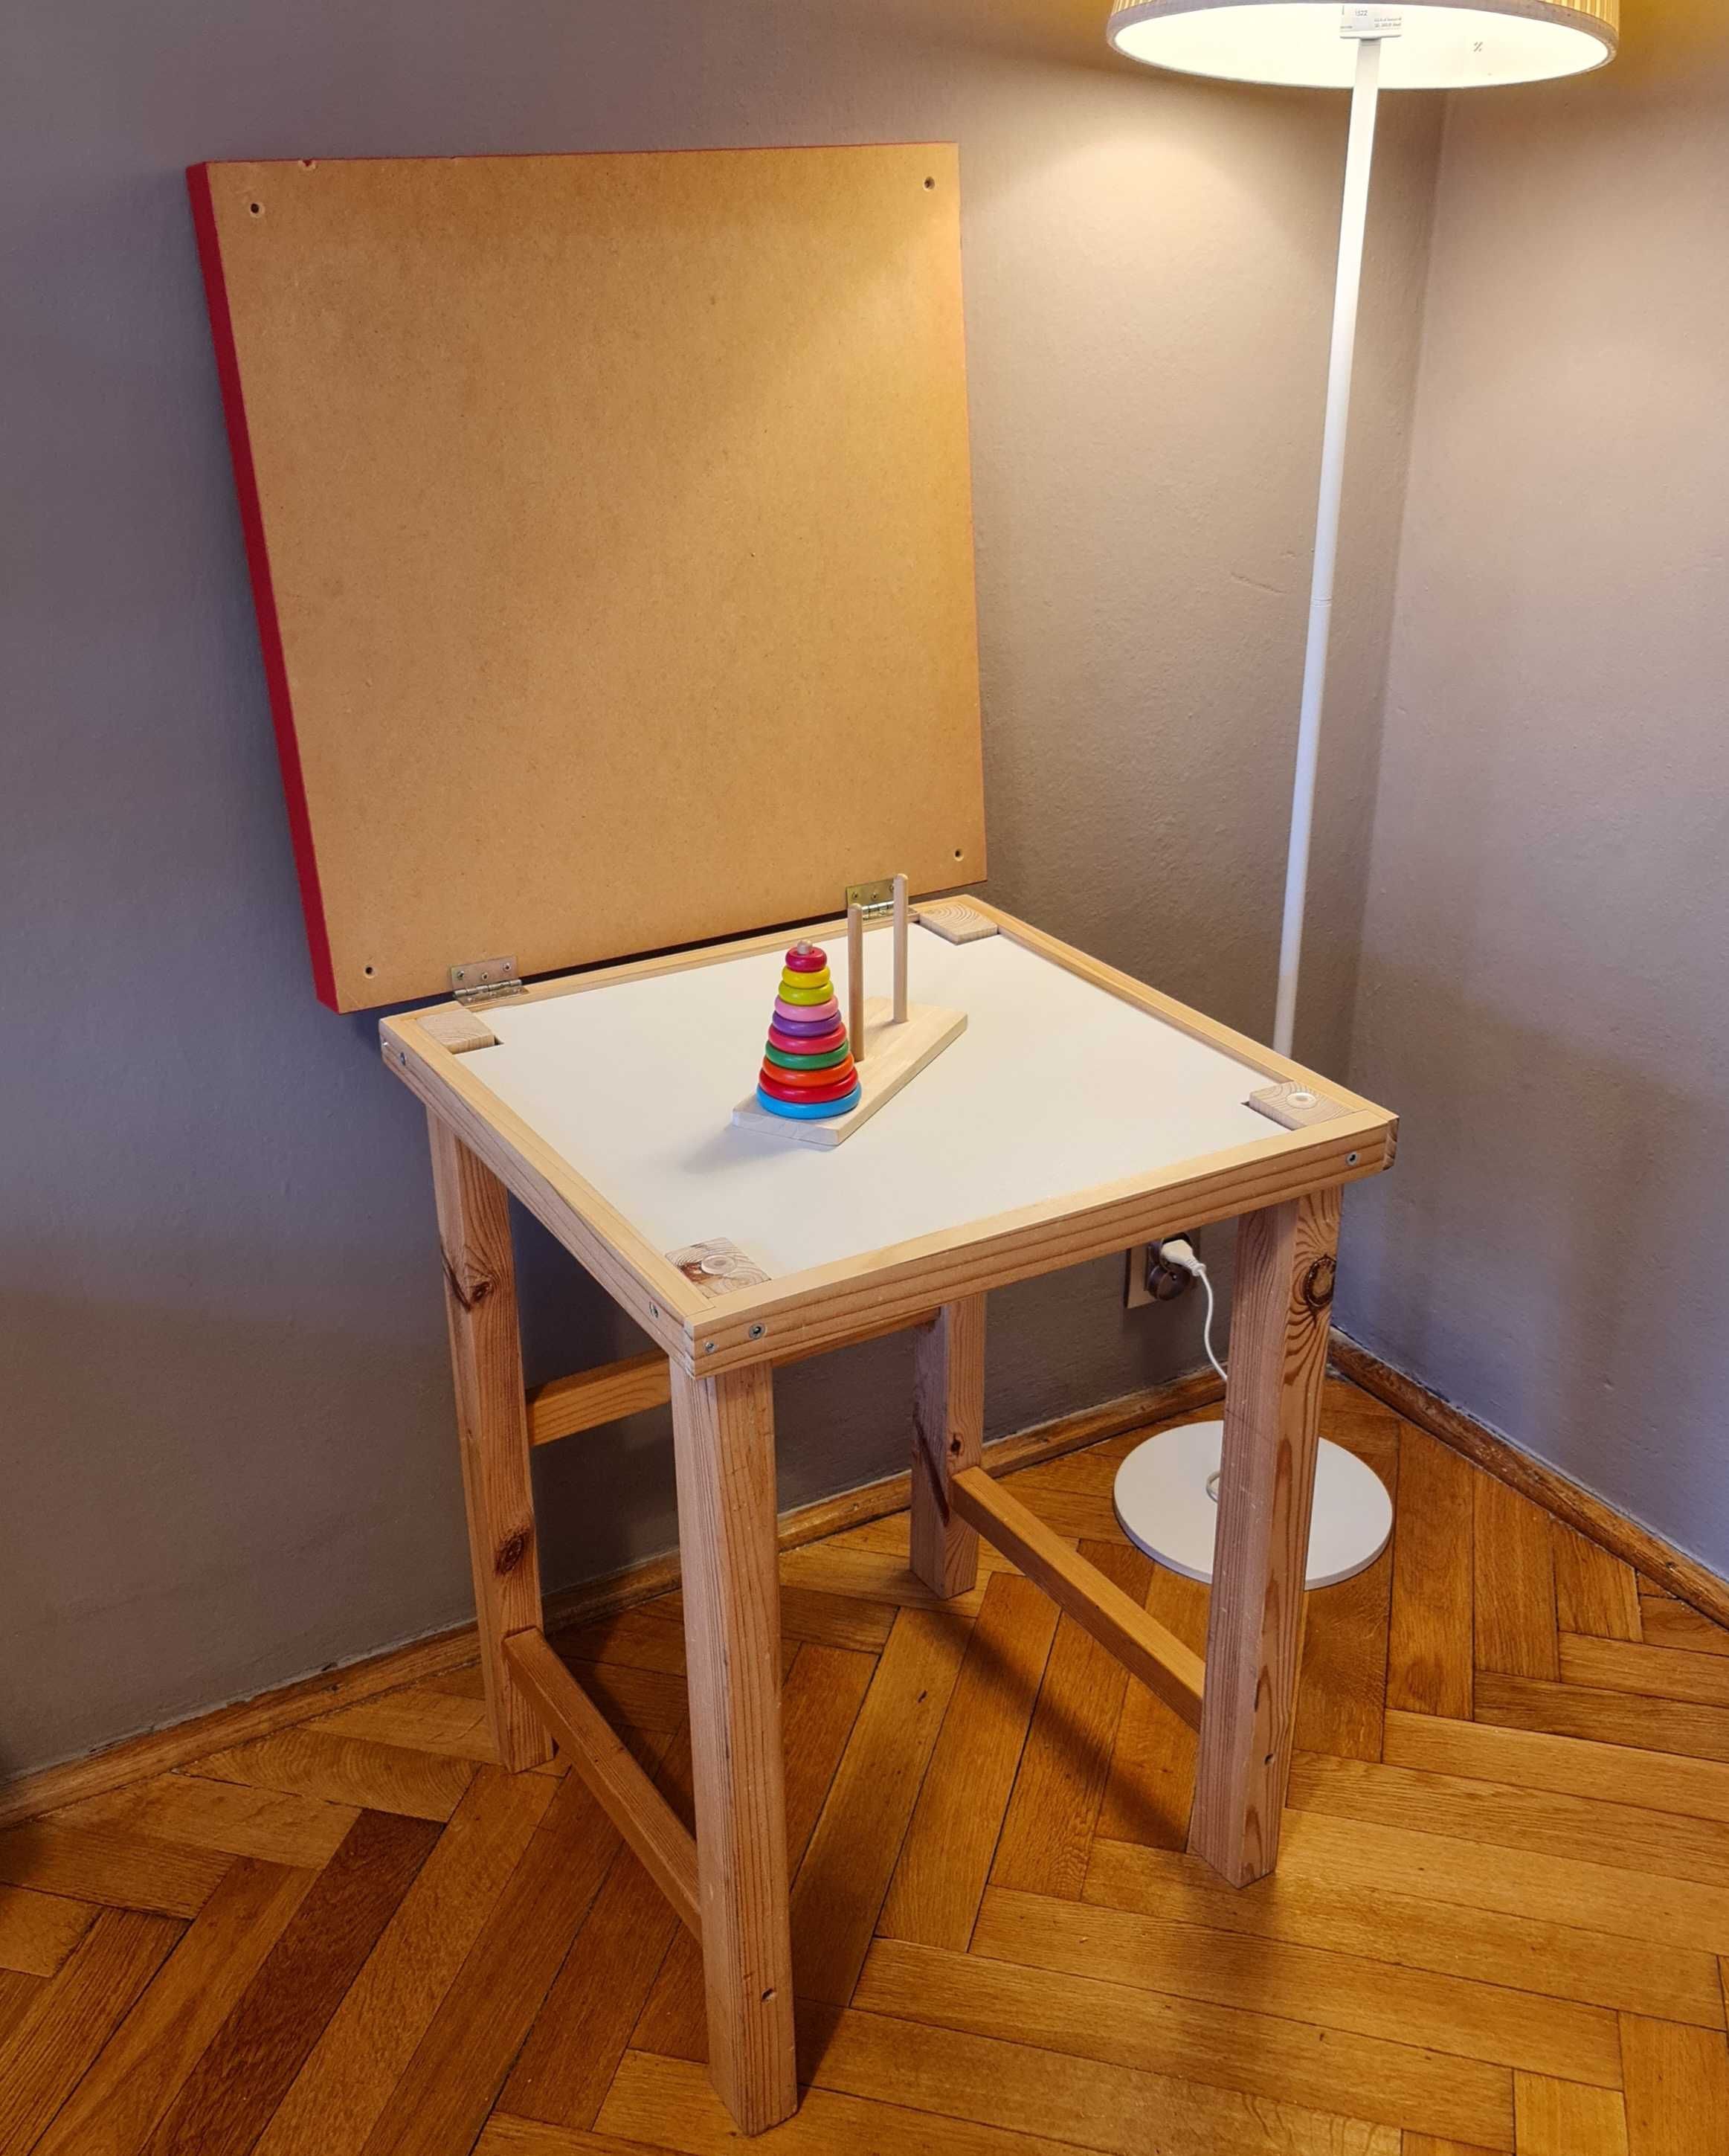 iKEA stół, stolik dla dziecka, z uchylnym blatem i półką